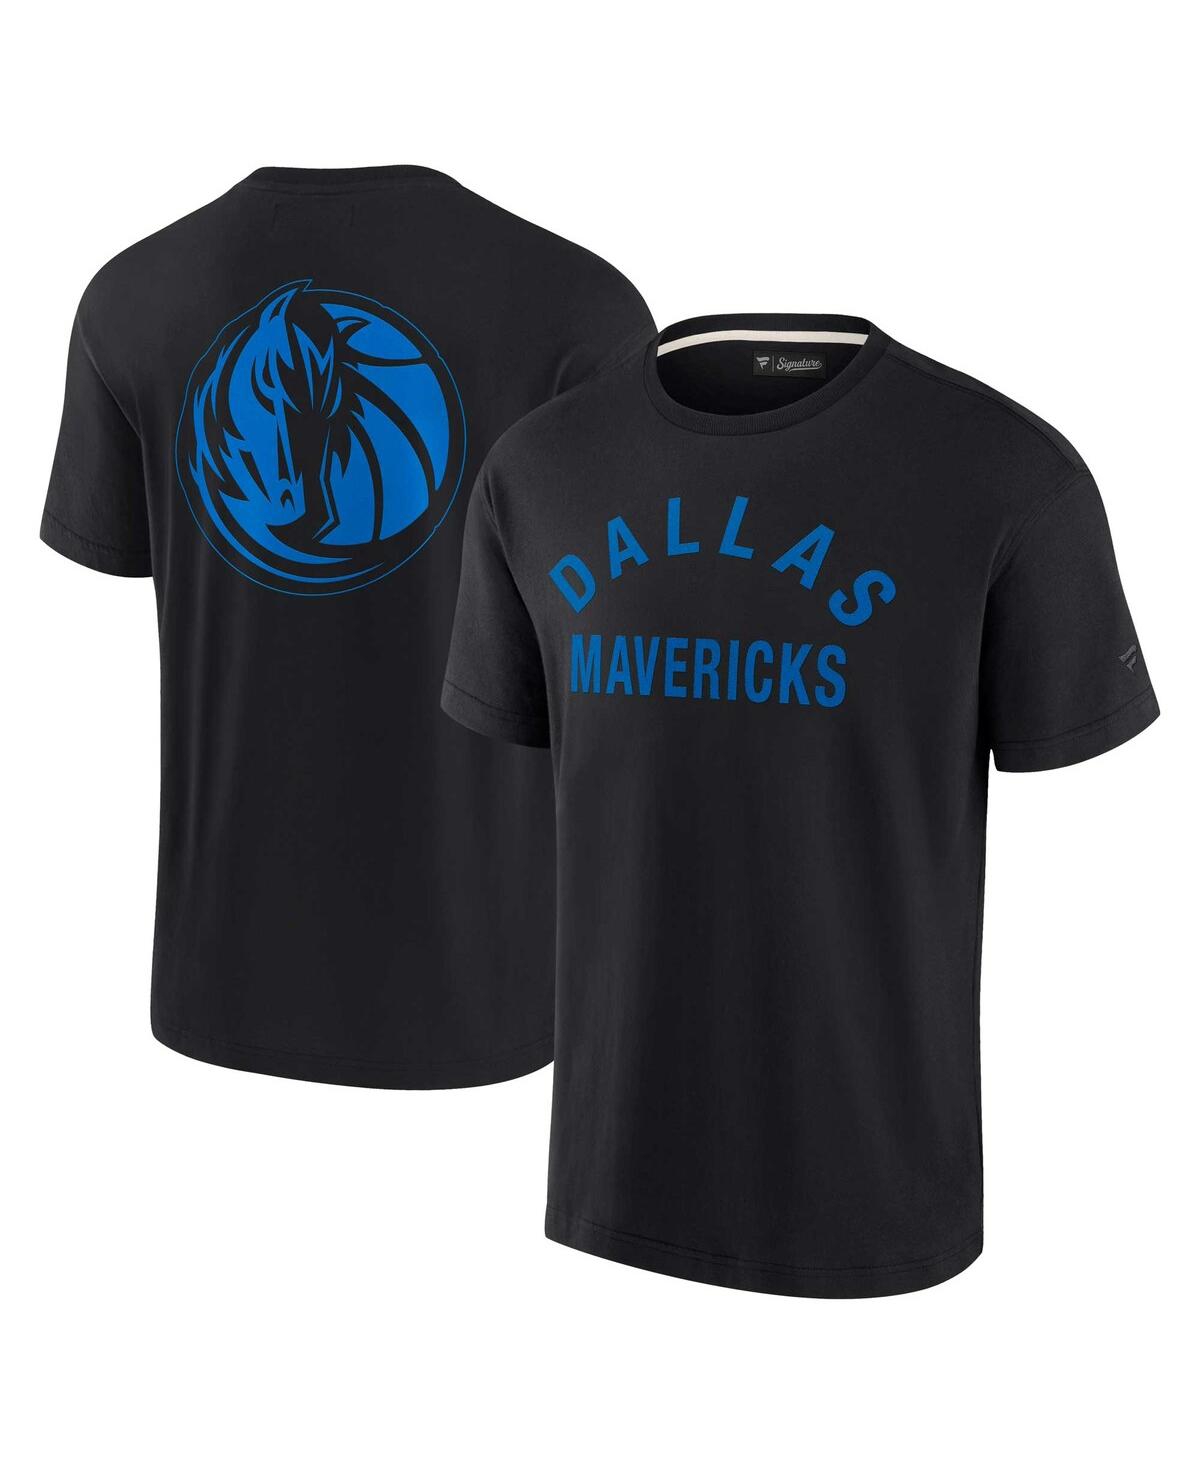 Men's and Women's Fanatics Signature Black Dallas Mavericks Super Soft T-shirt - Black